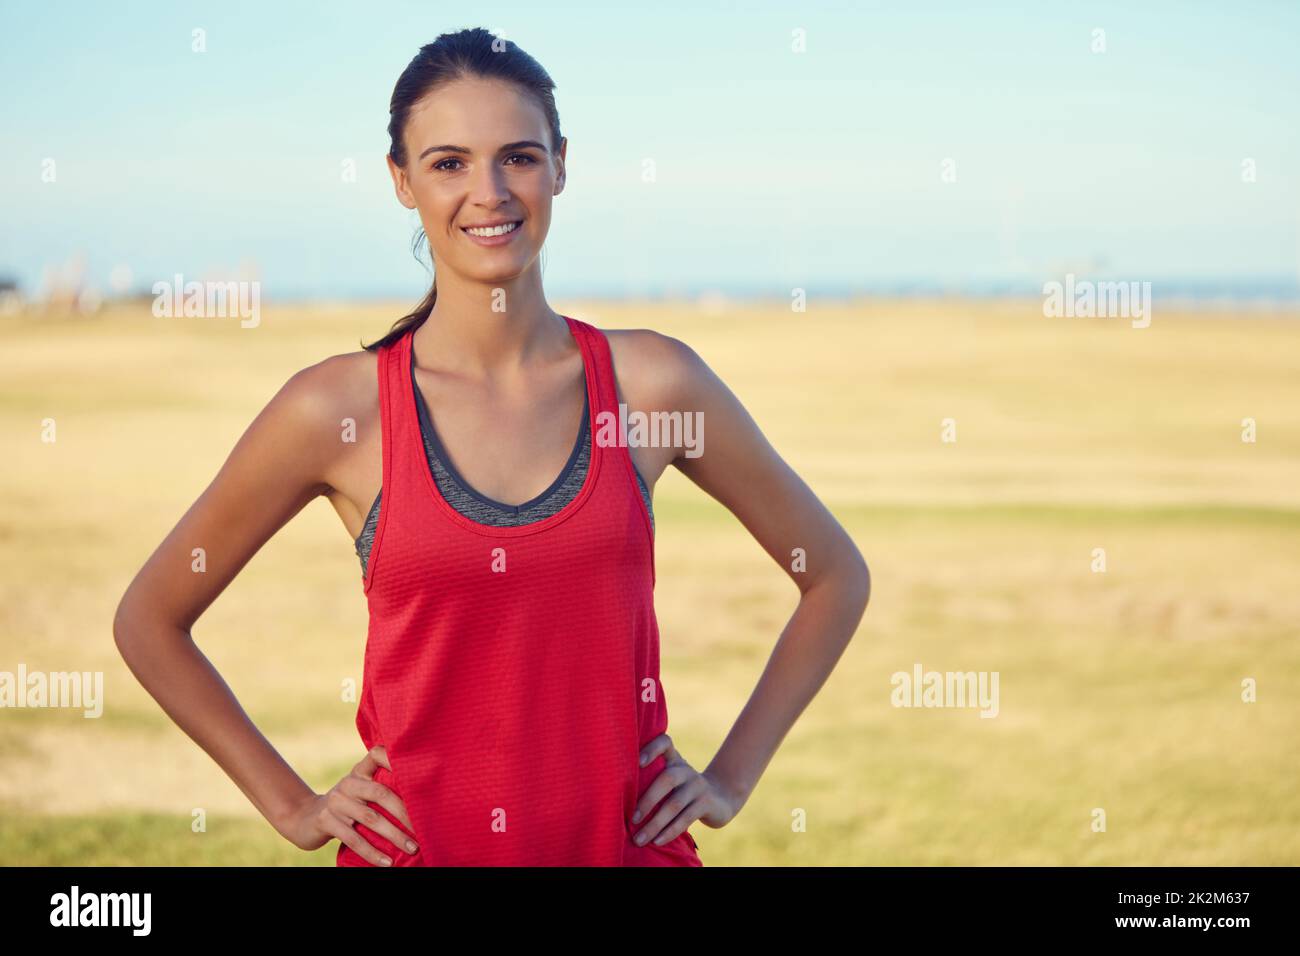 Die Wahl für einen gesünderen Lebensstil liegt ganz bei Ihnen. Porträt einer sportlichen jungen Frau, die im Freien trainiert. Stockfoto